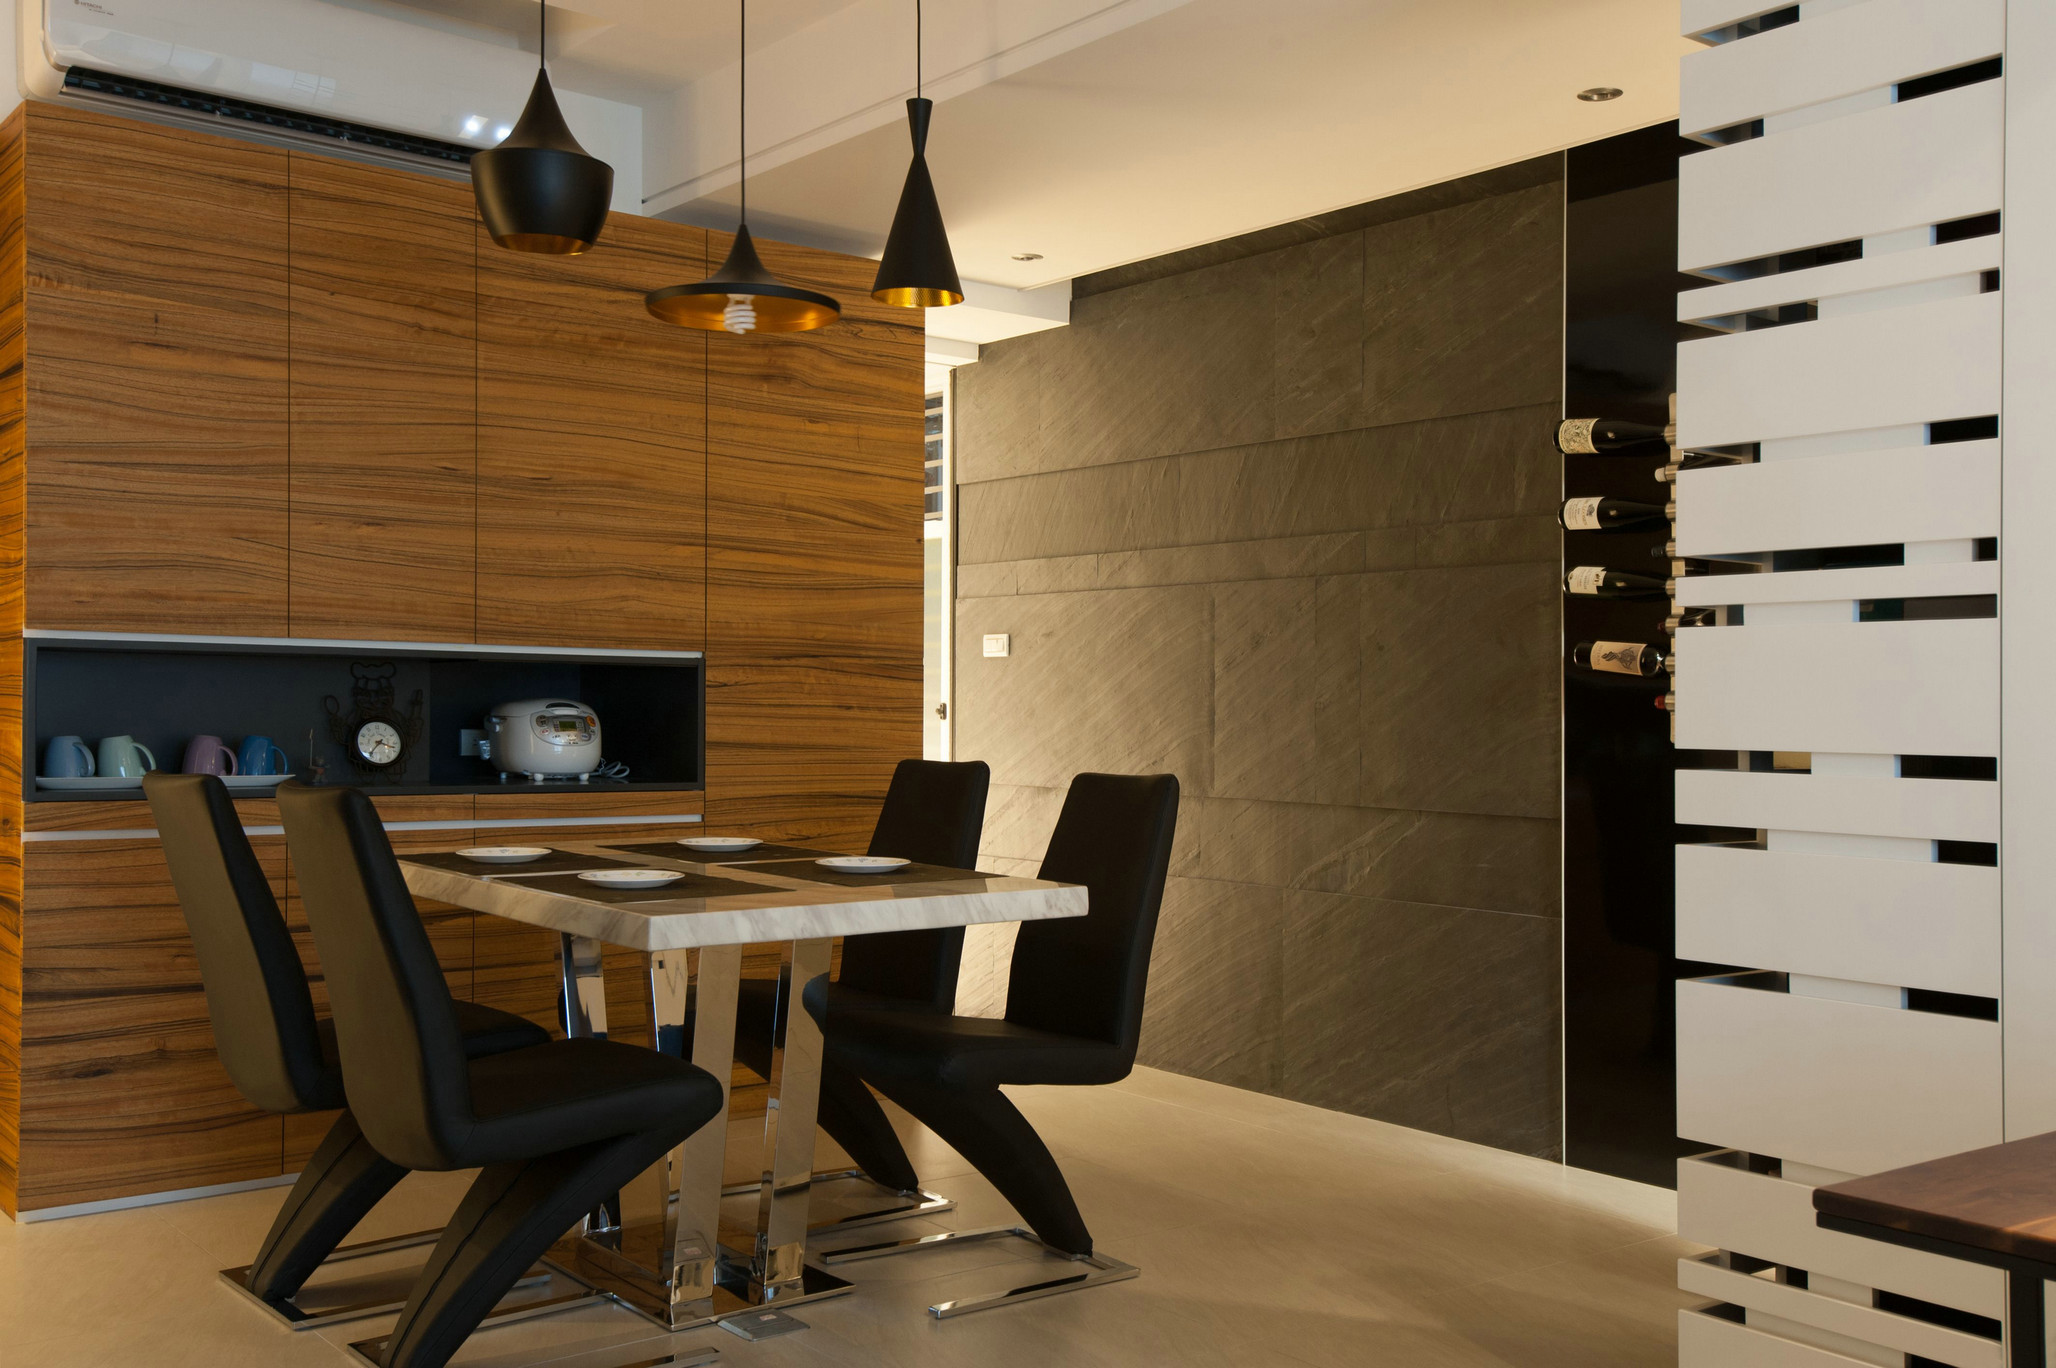 原木色背景墙给餐厅空间带来一种视觉延伸感，赋予空间大方而沉稳的基调。